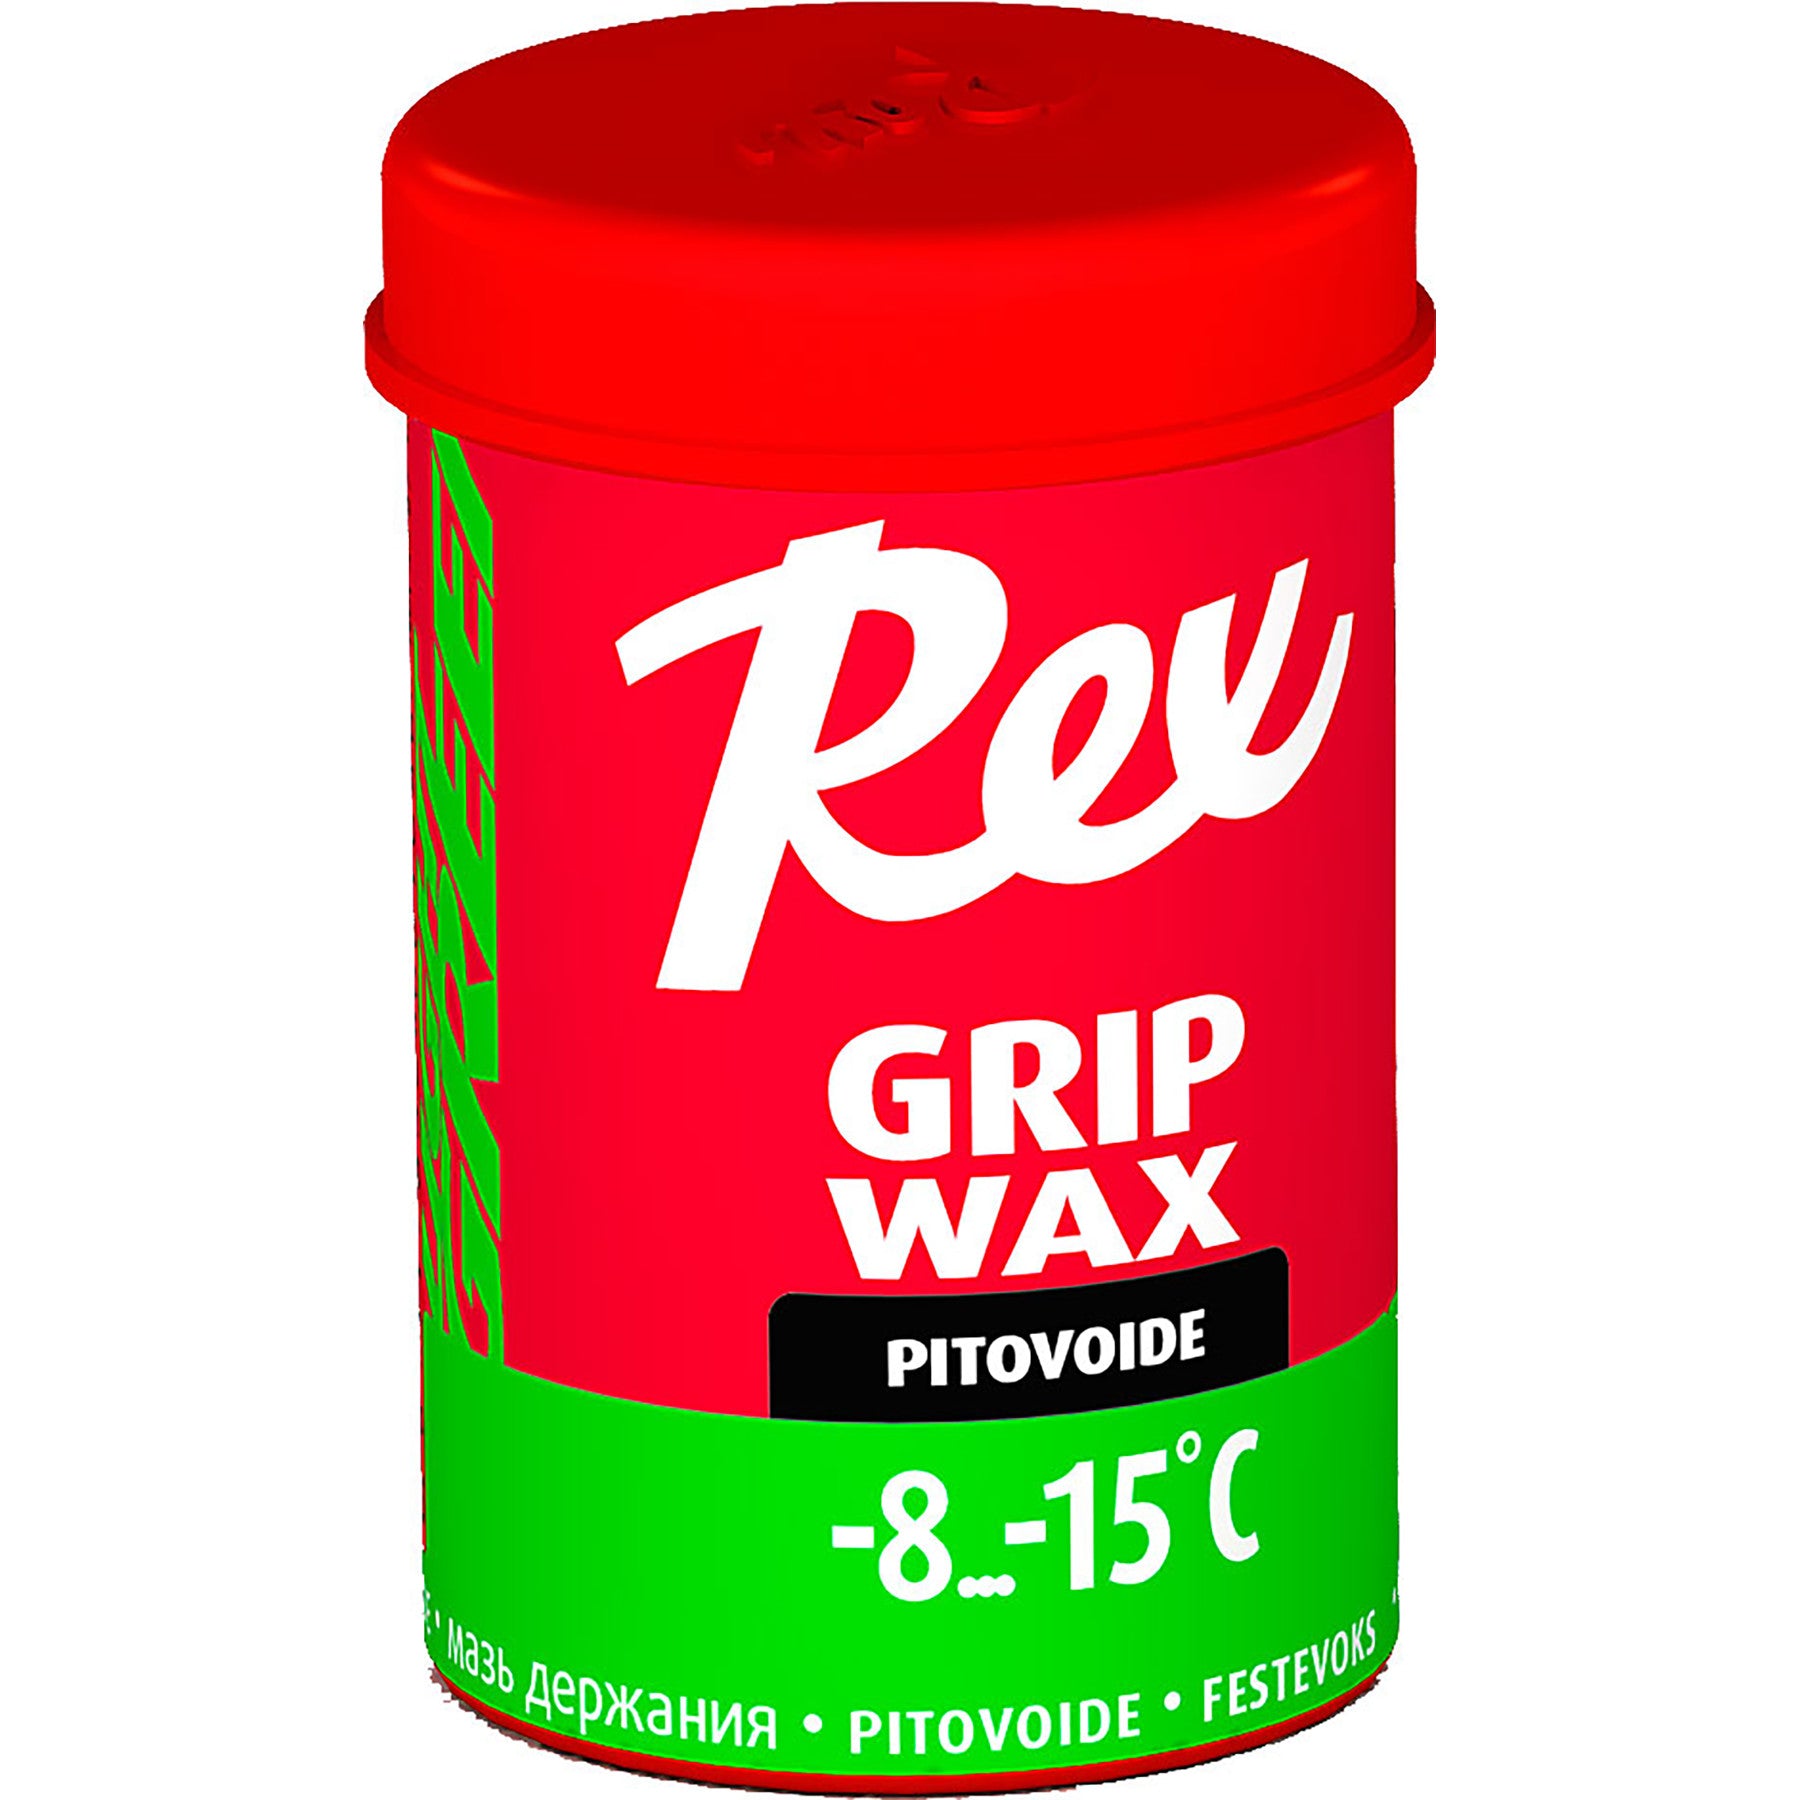 Buy green Rex Grip Wax 45g